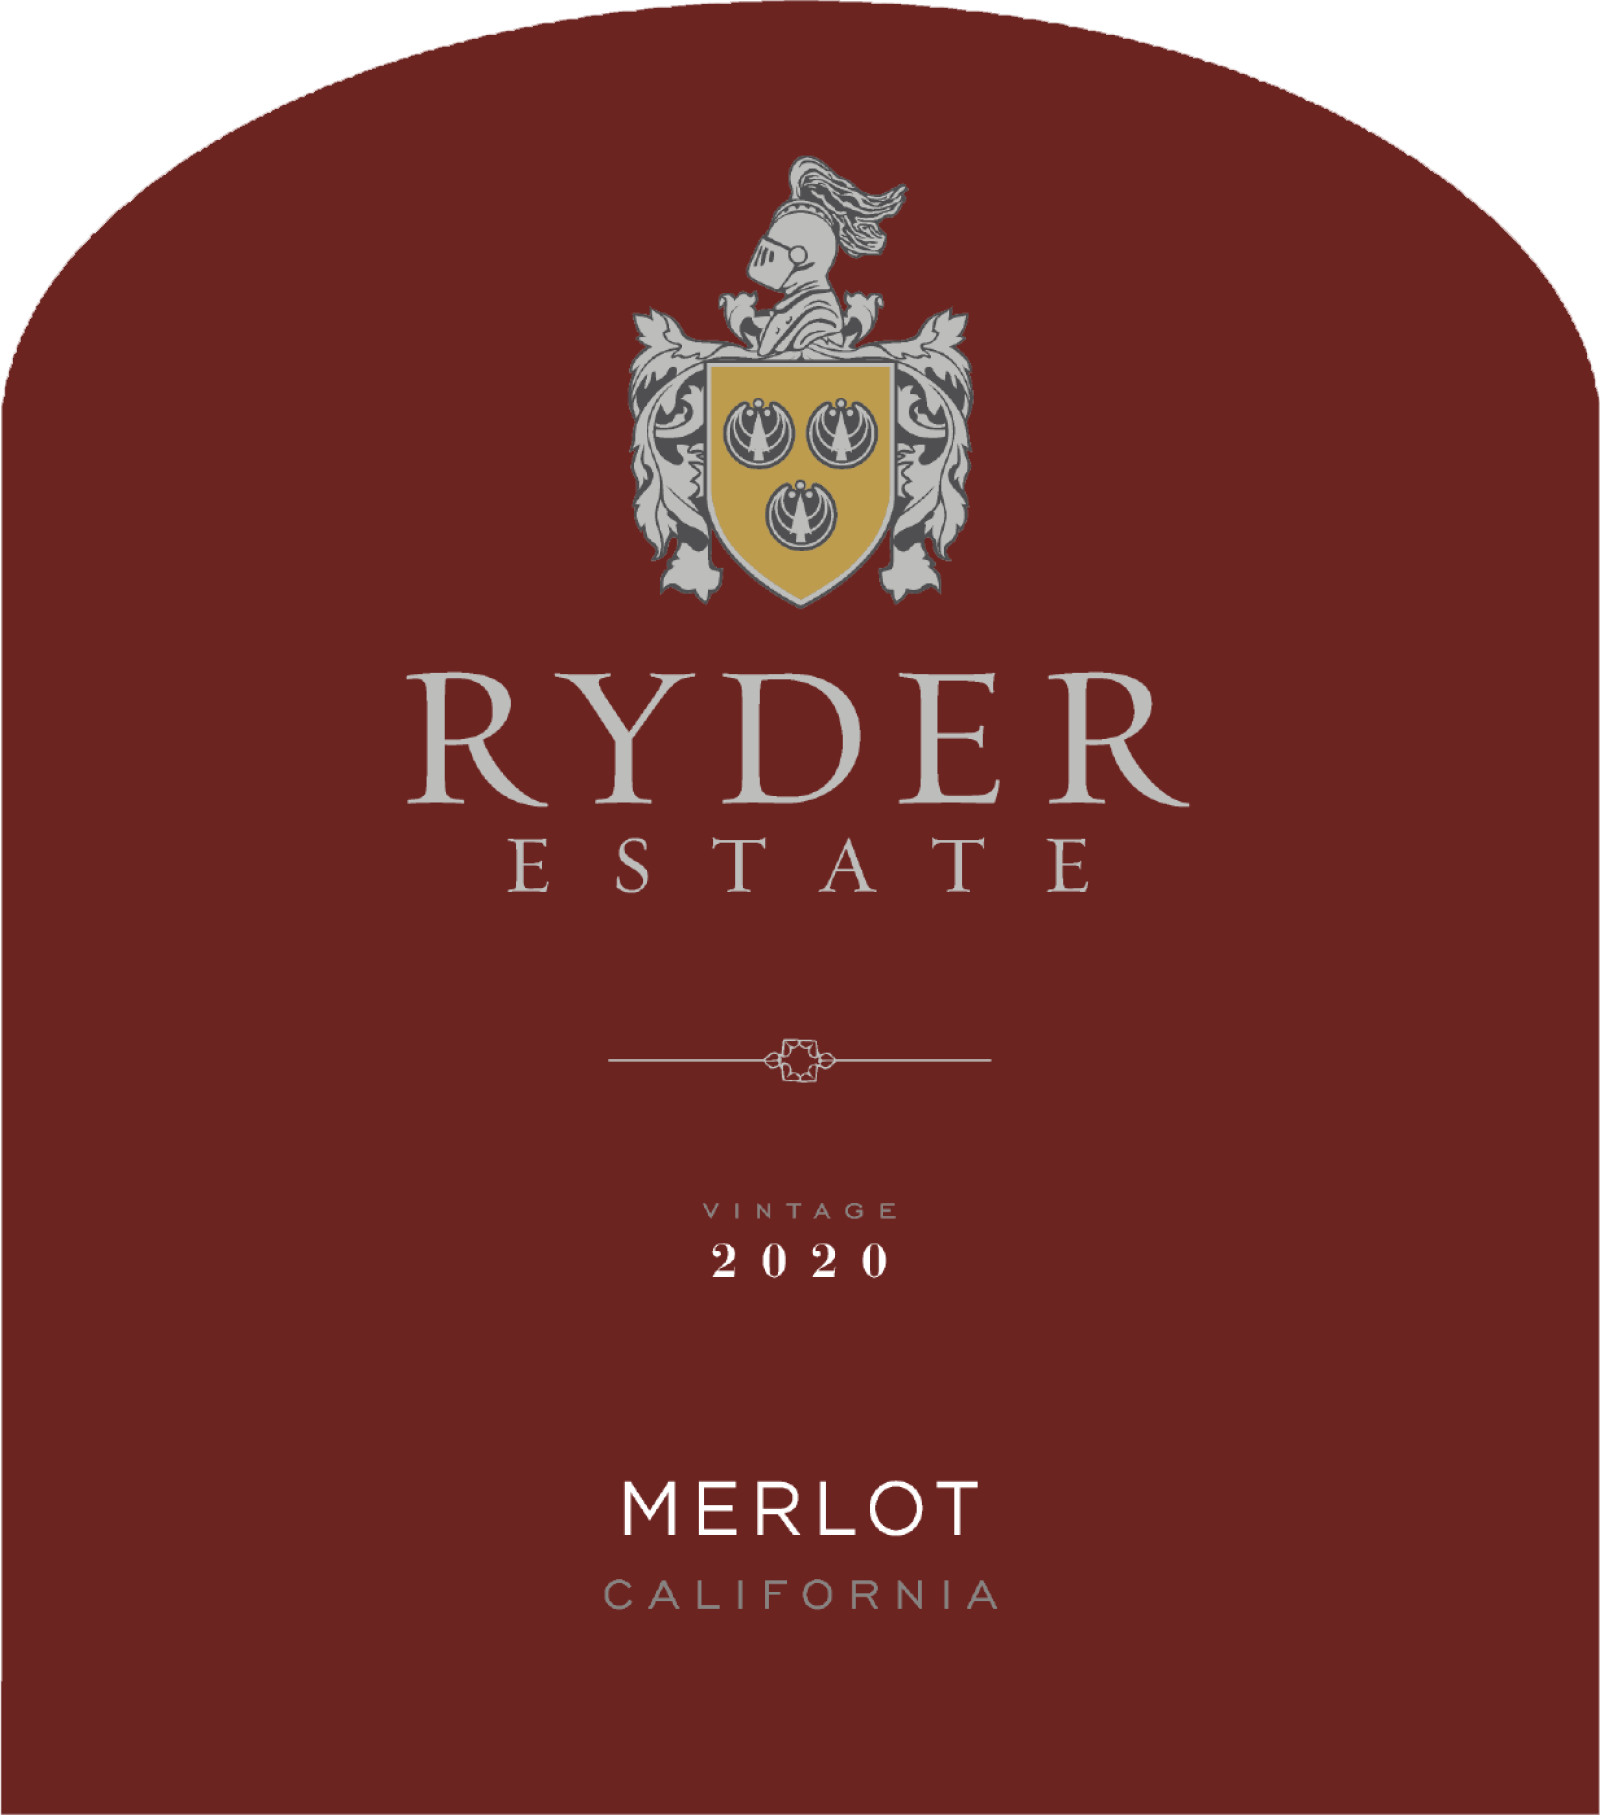 Ryder Estate Merlot 2020